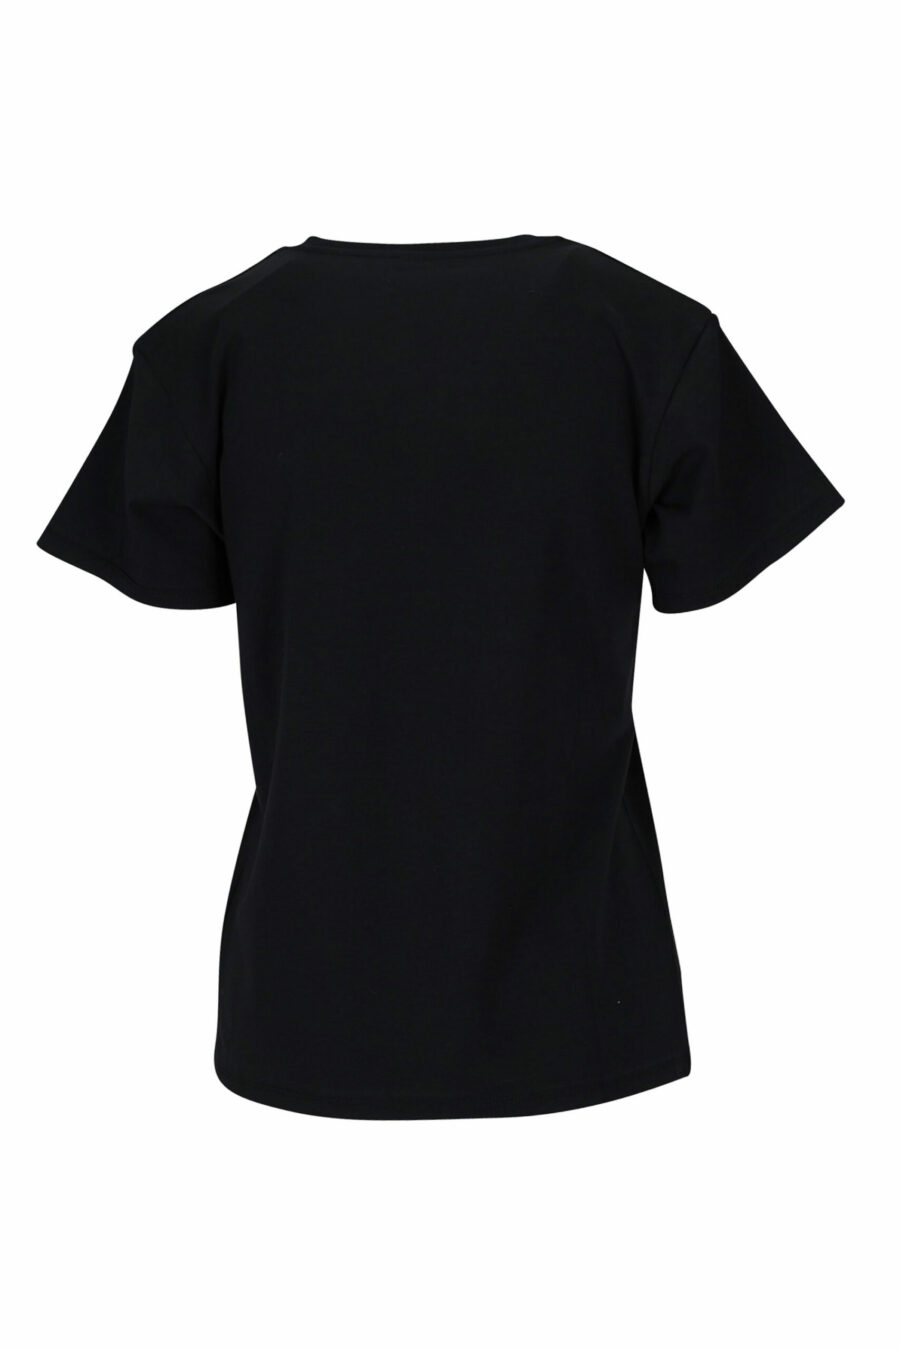 T-shirt preta com decote em V e logótipo de fita monocromática - 889316614954 1 scaled